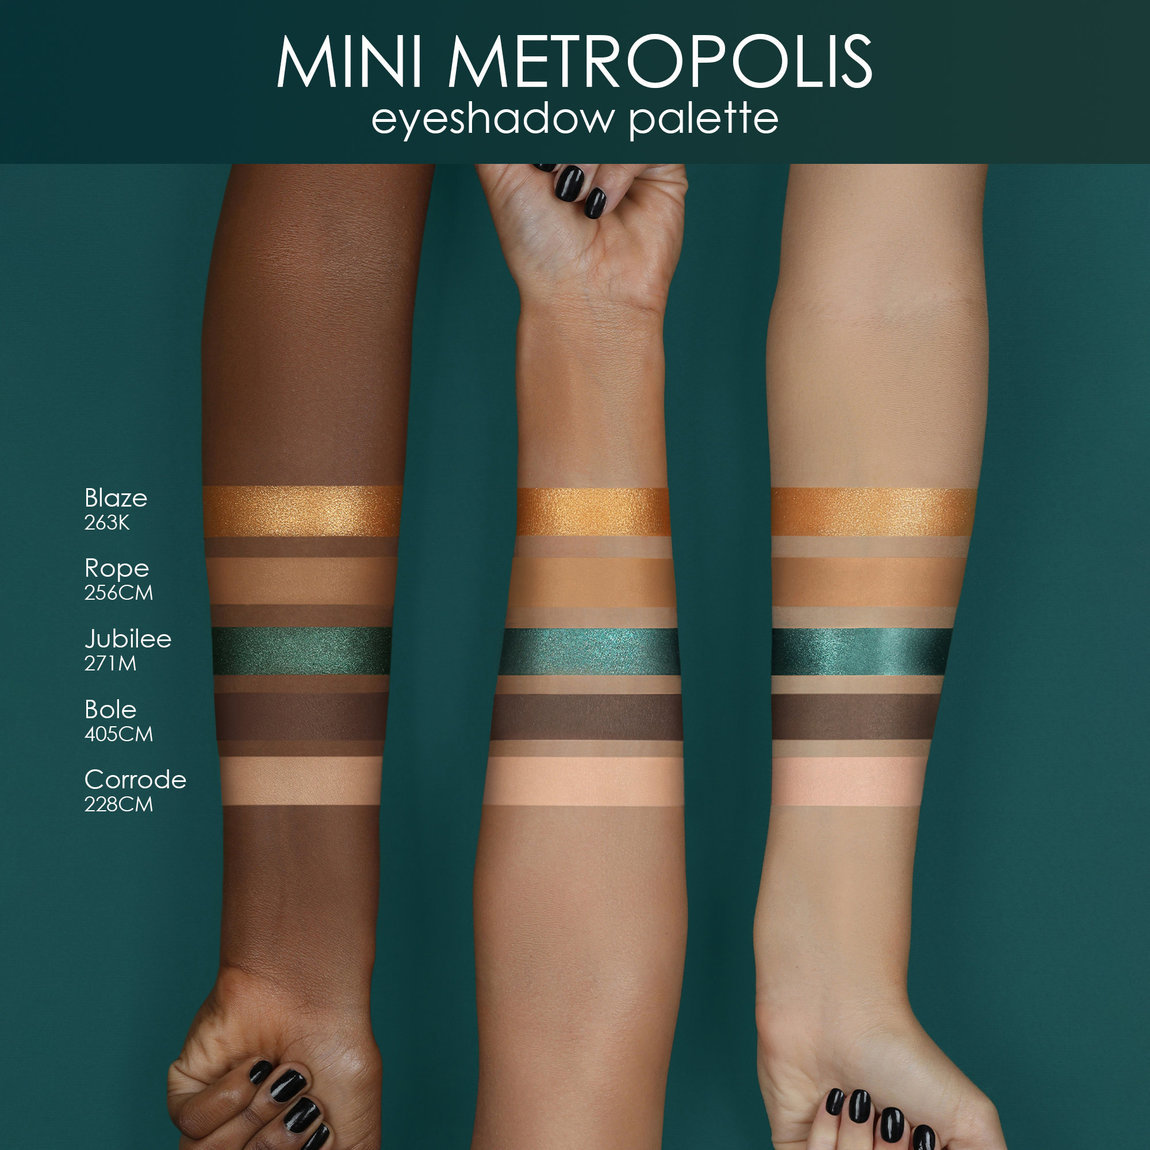 Natasha Denona Mini Metropolis Eyeshadow Palette Swatches Shades Farben